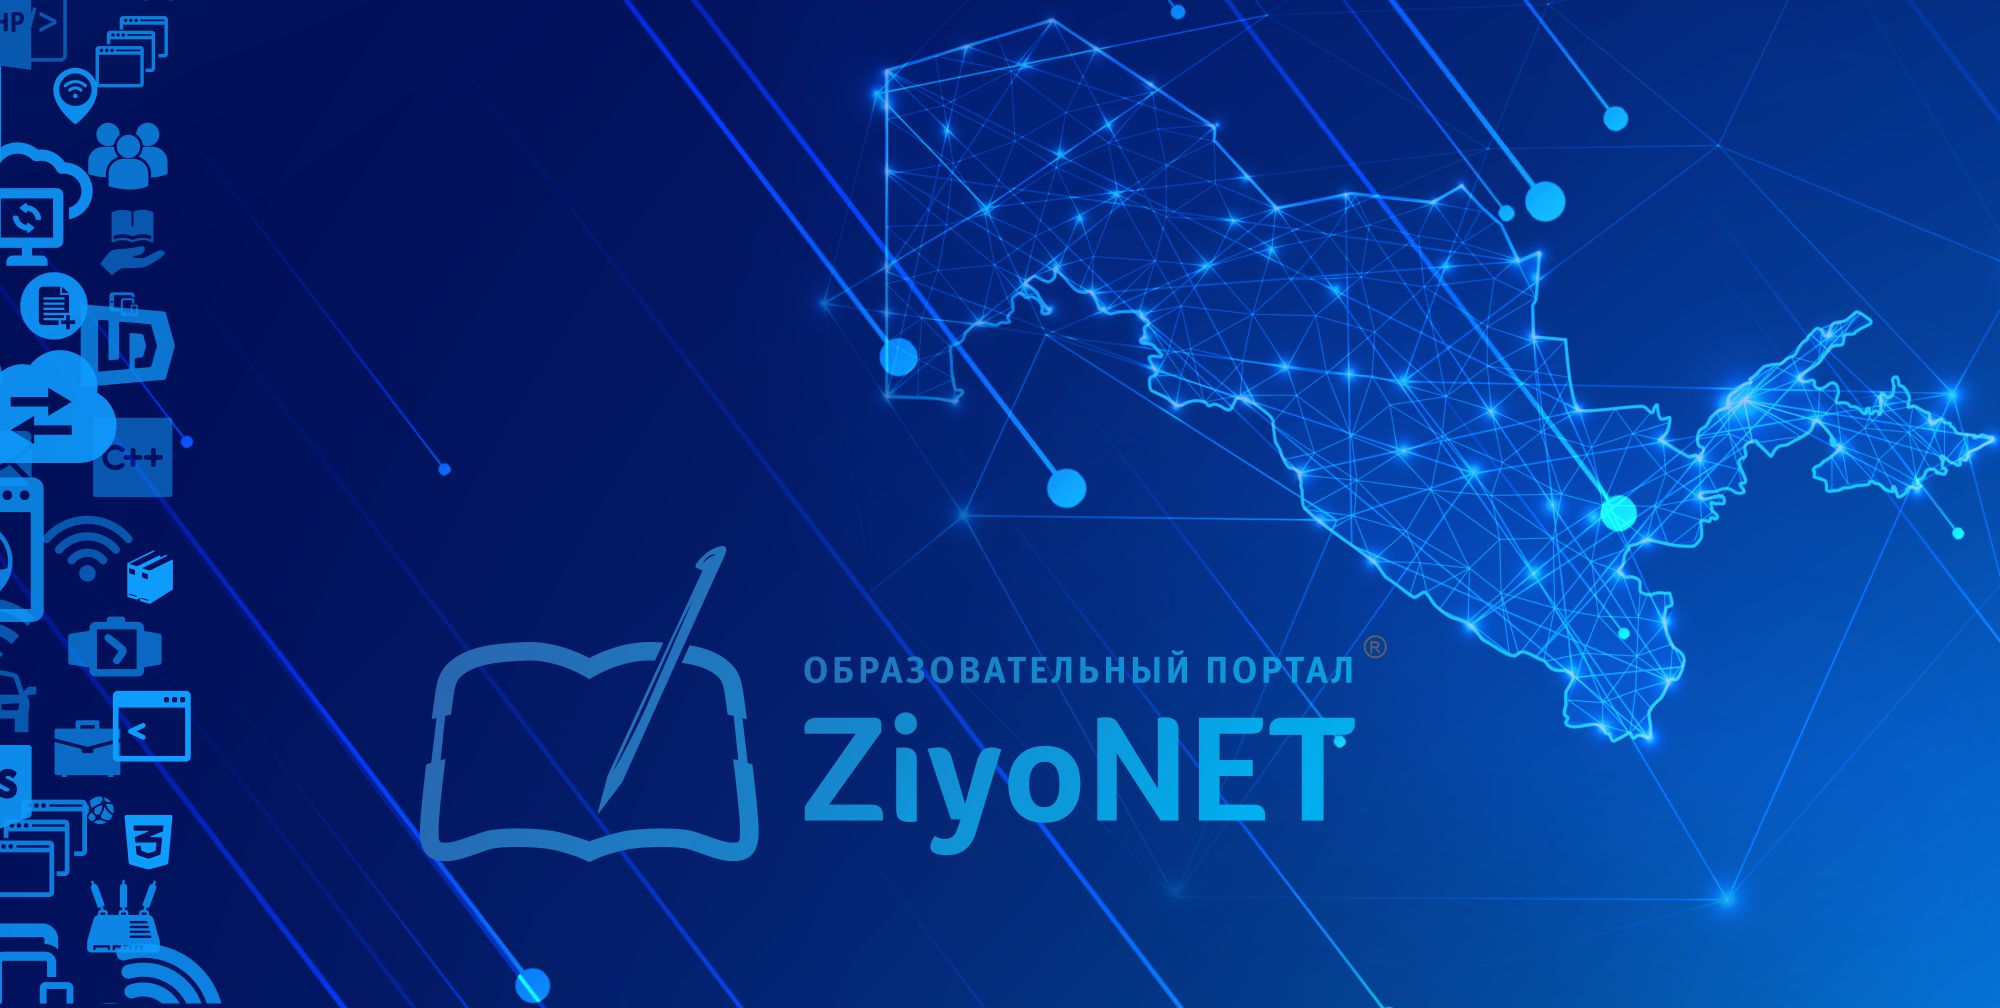 Образовательный портал ZiyoNET